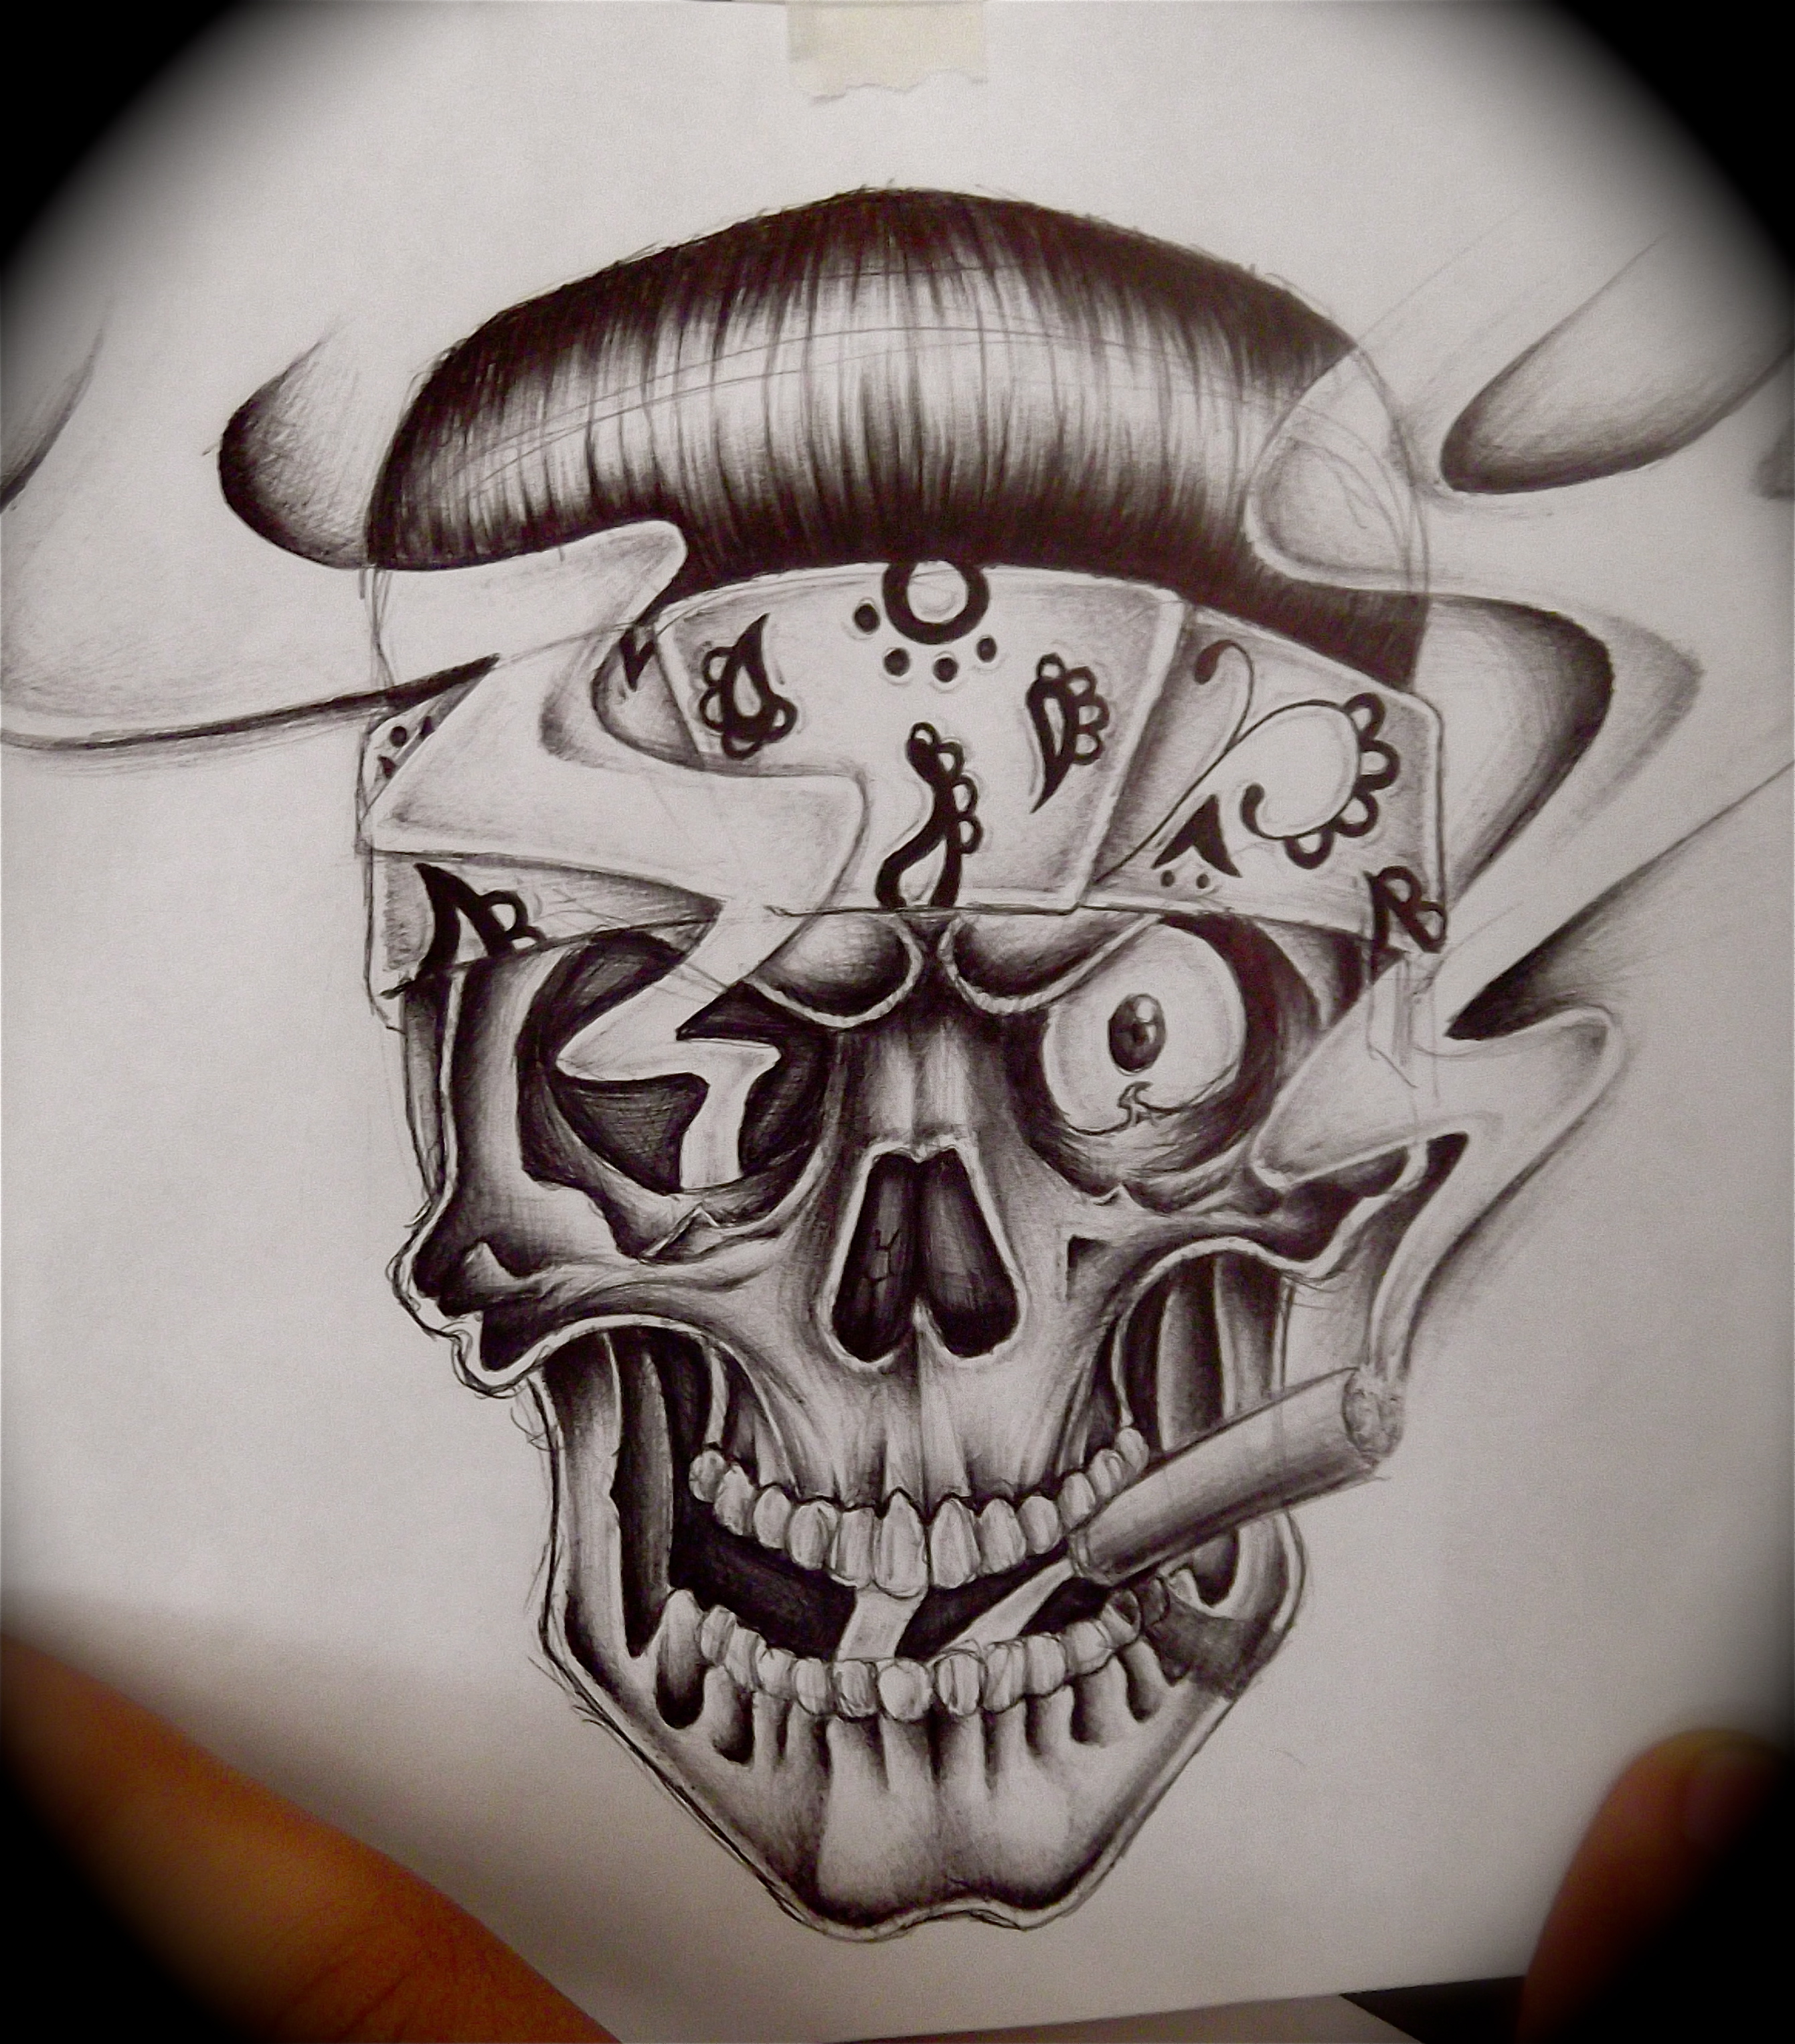 Skull With Bandana Drawing at GetDrawings | Free download